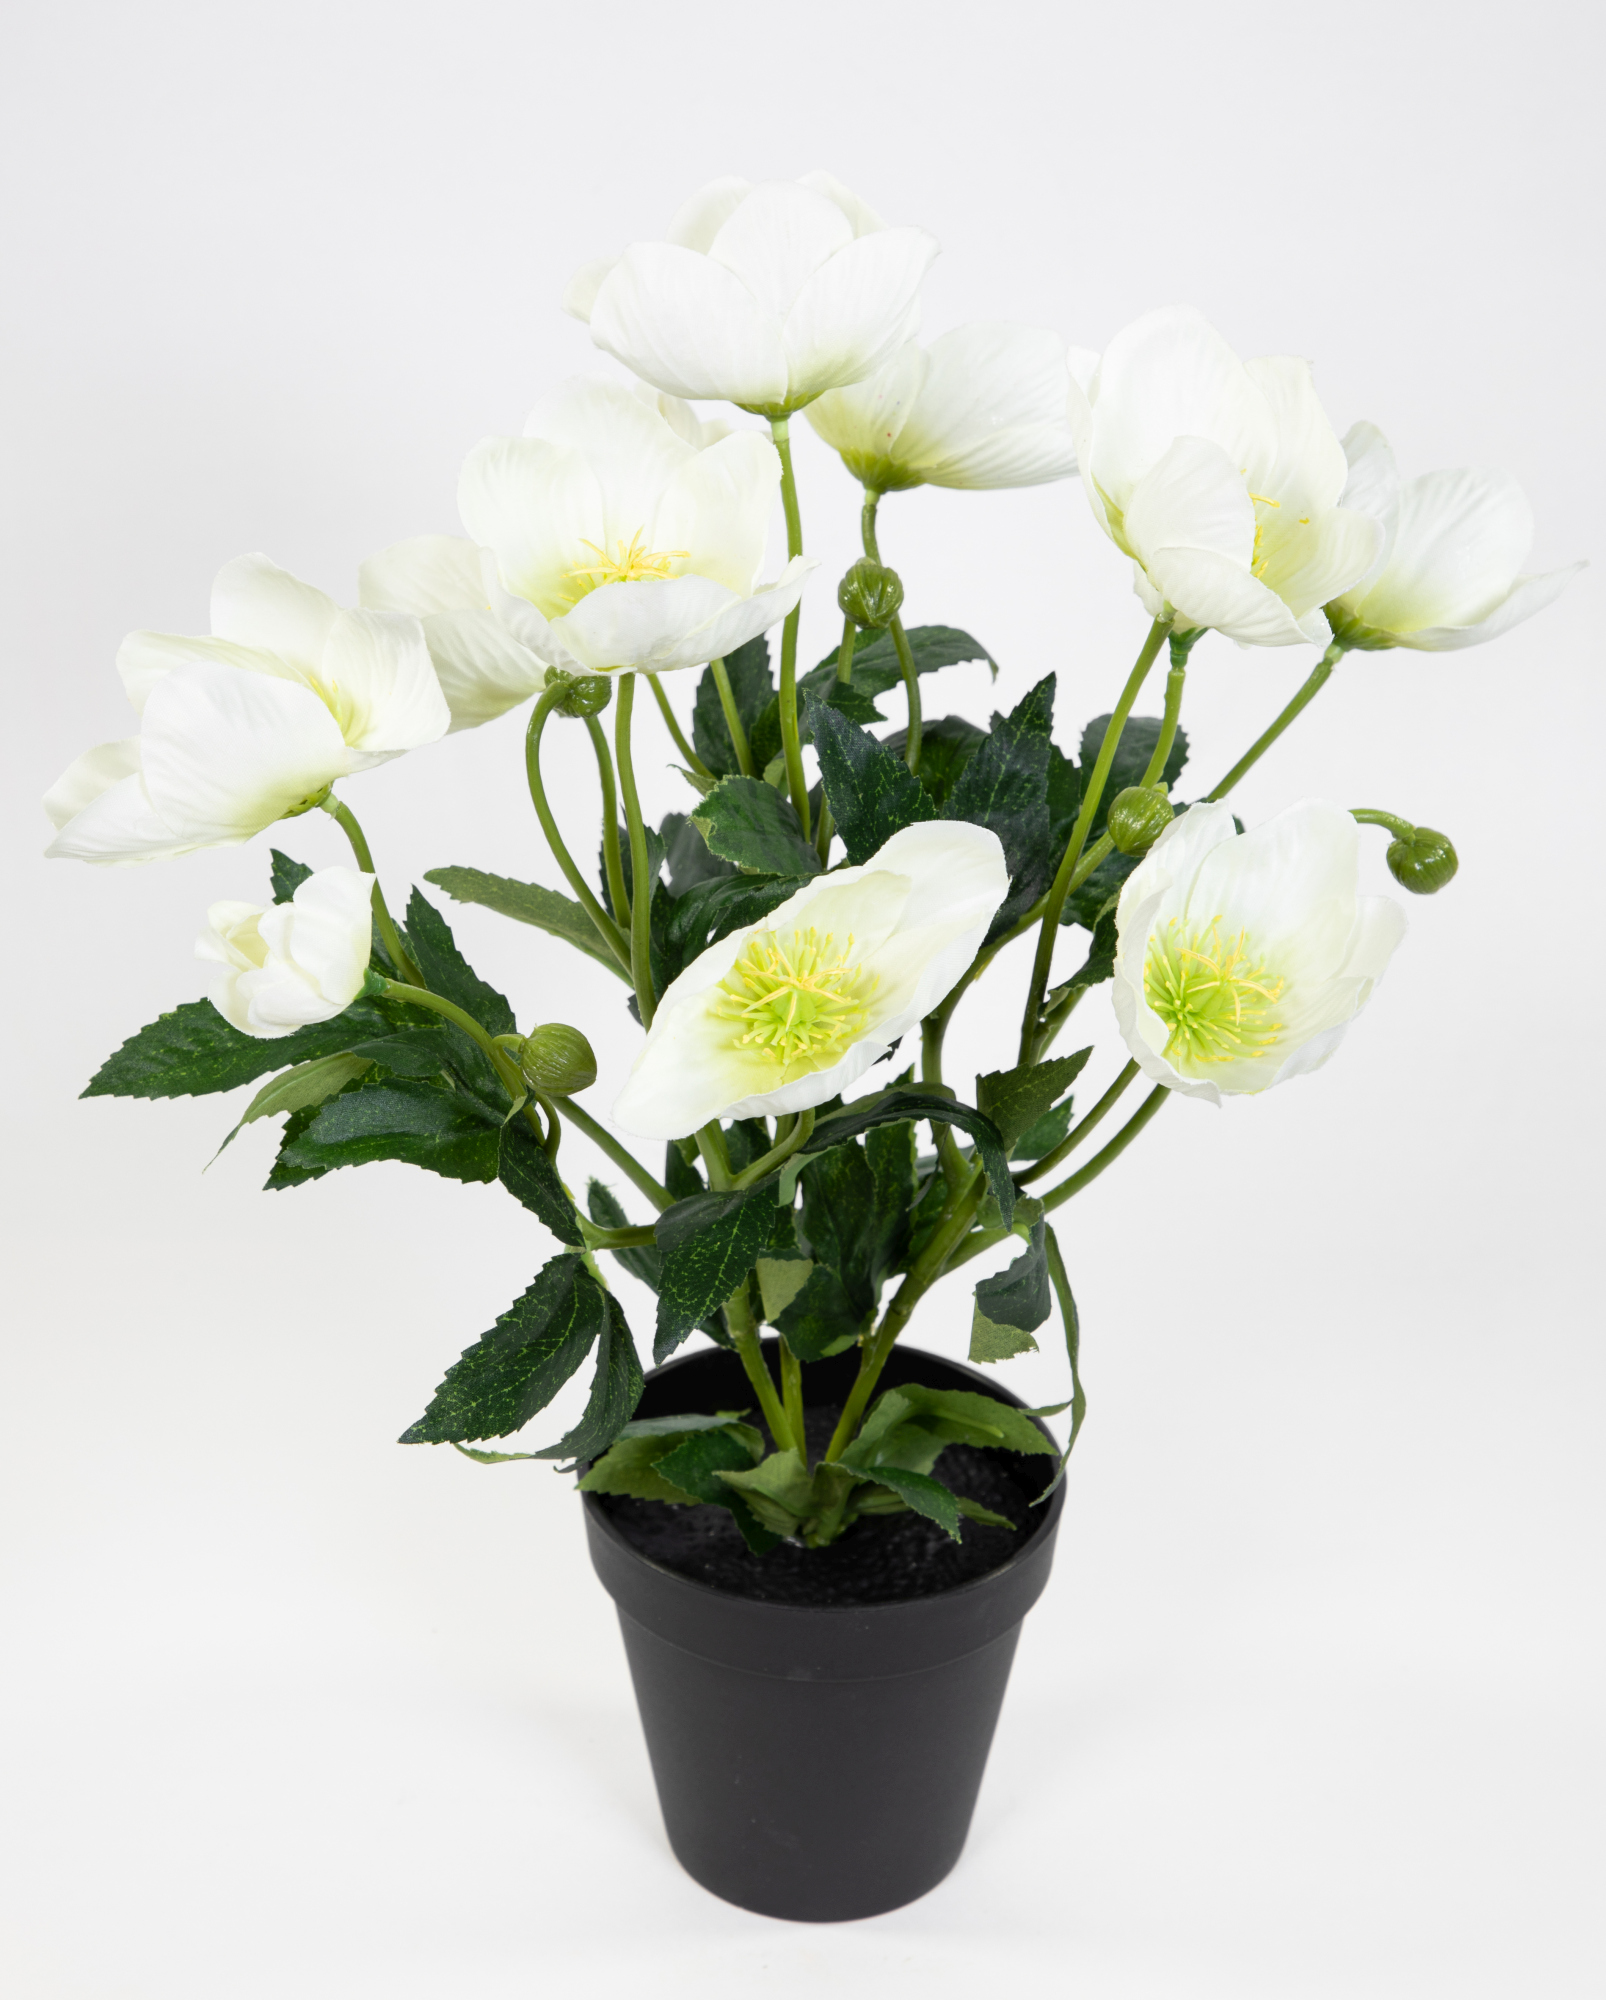 Christrosenbusch 36cm weiß im Topf PM Kunstblumen künstliche Christrose Pflanzen Blumen Kunstblumen